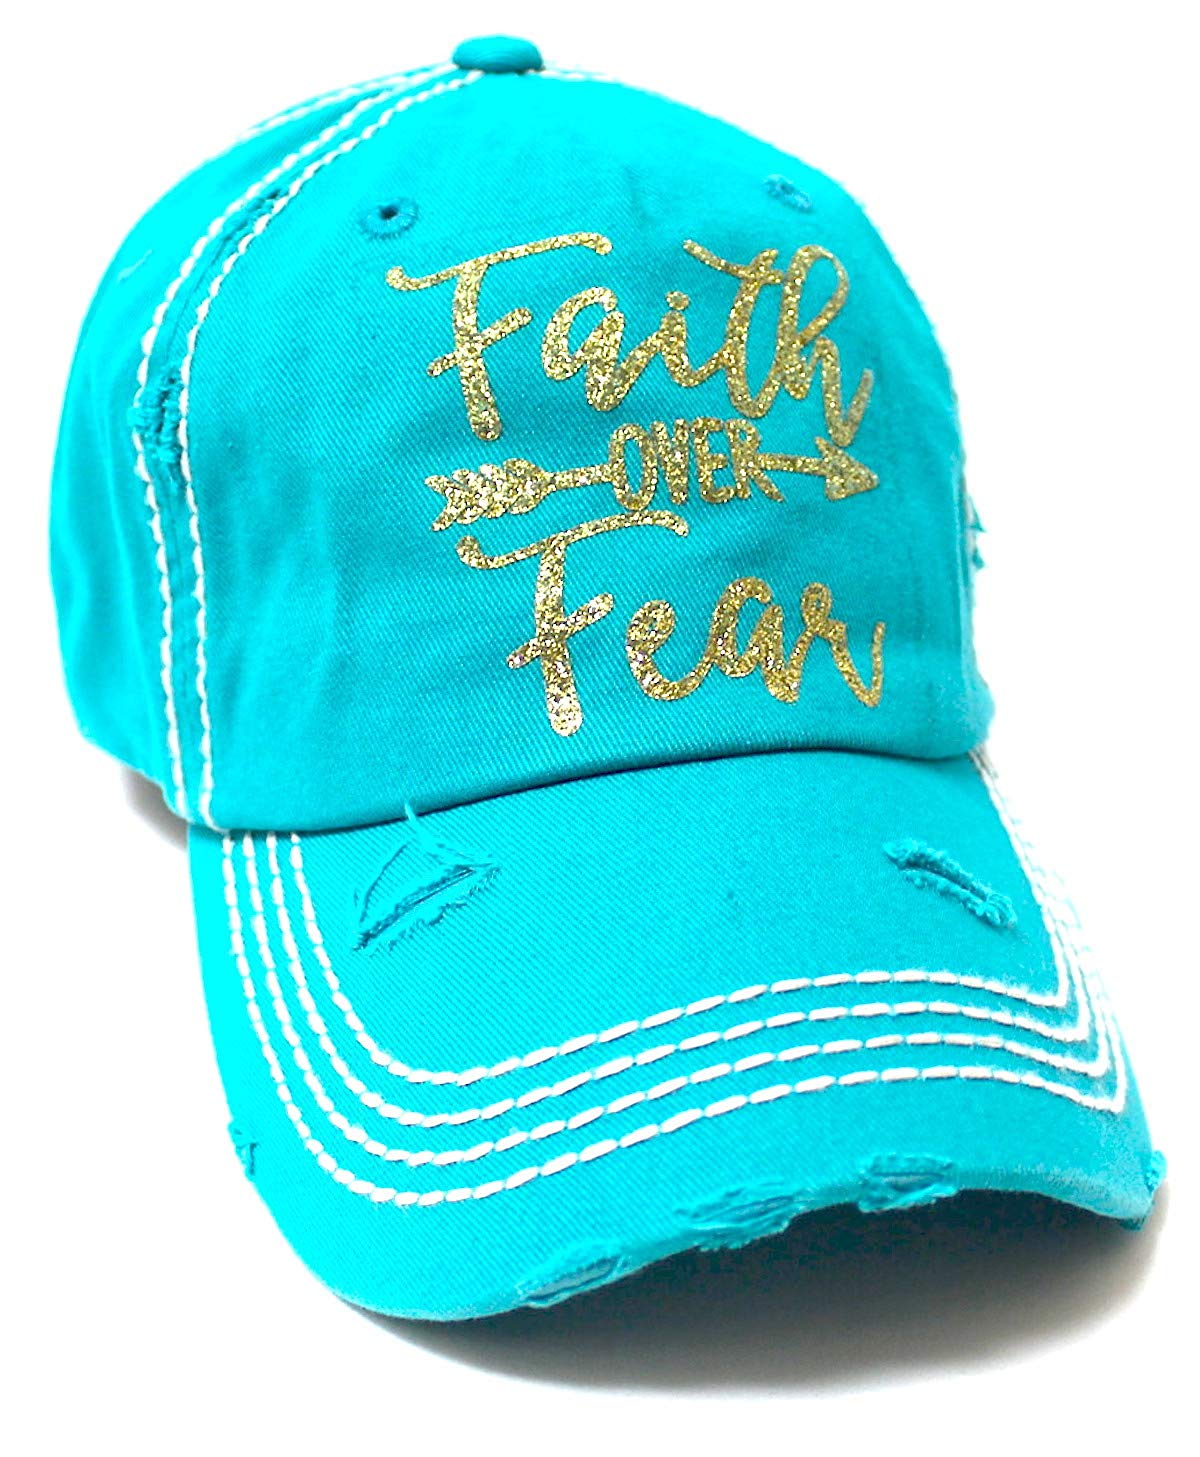 Women's Baseball Cap Faith Over Fear Glitter Monogram Hat, Turquoise Blue - Caps 'N Vintage 